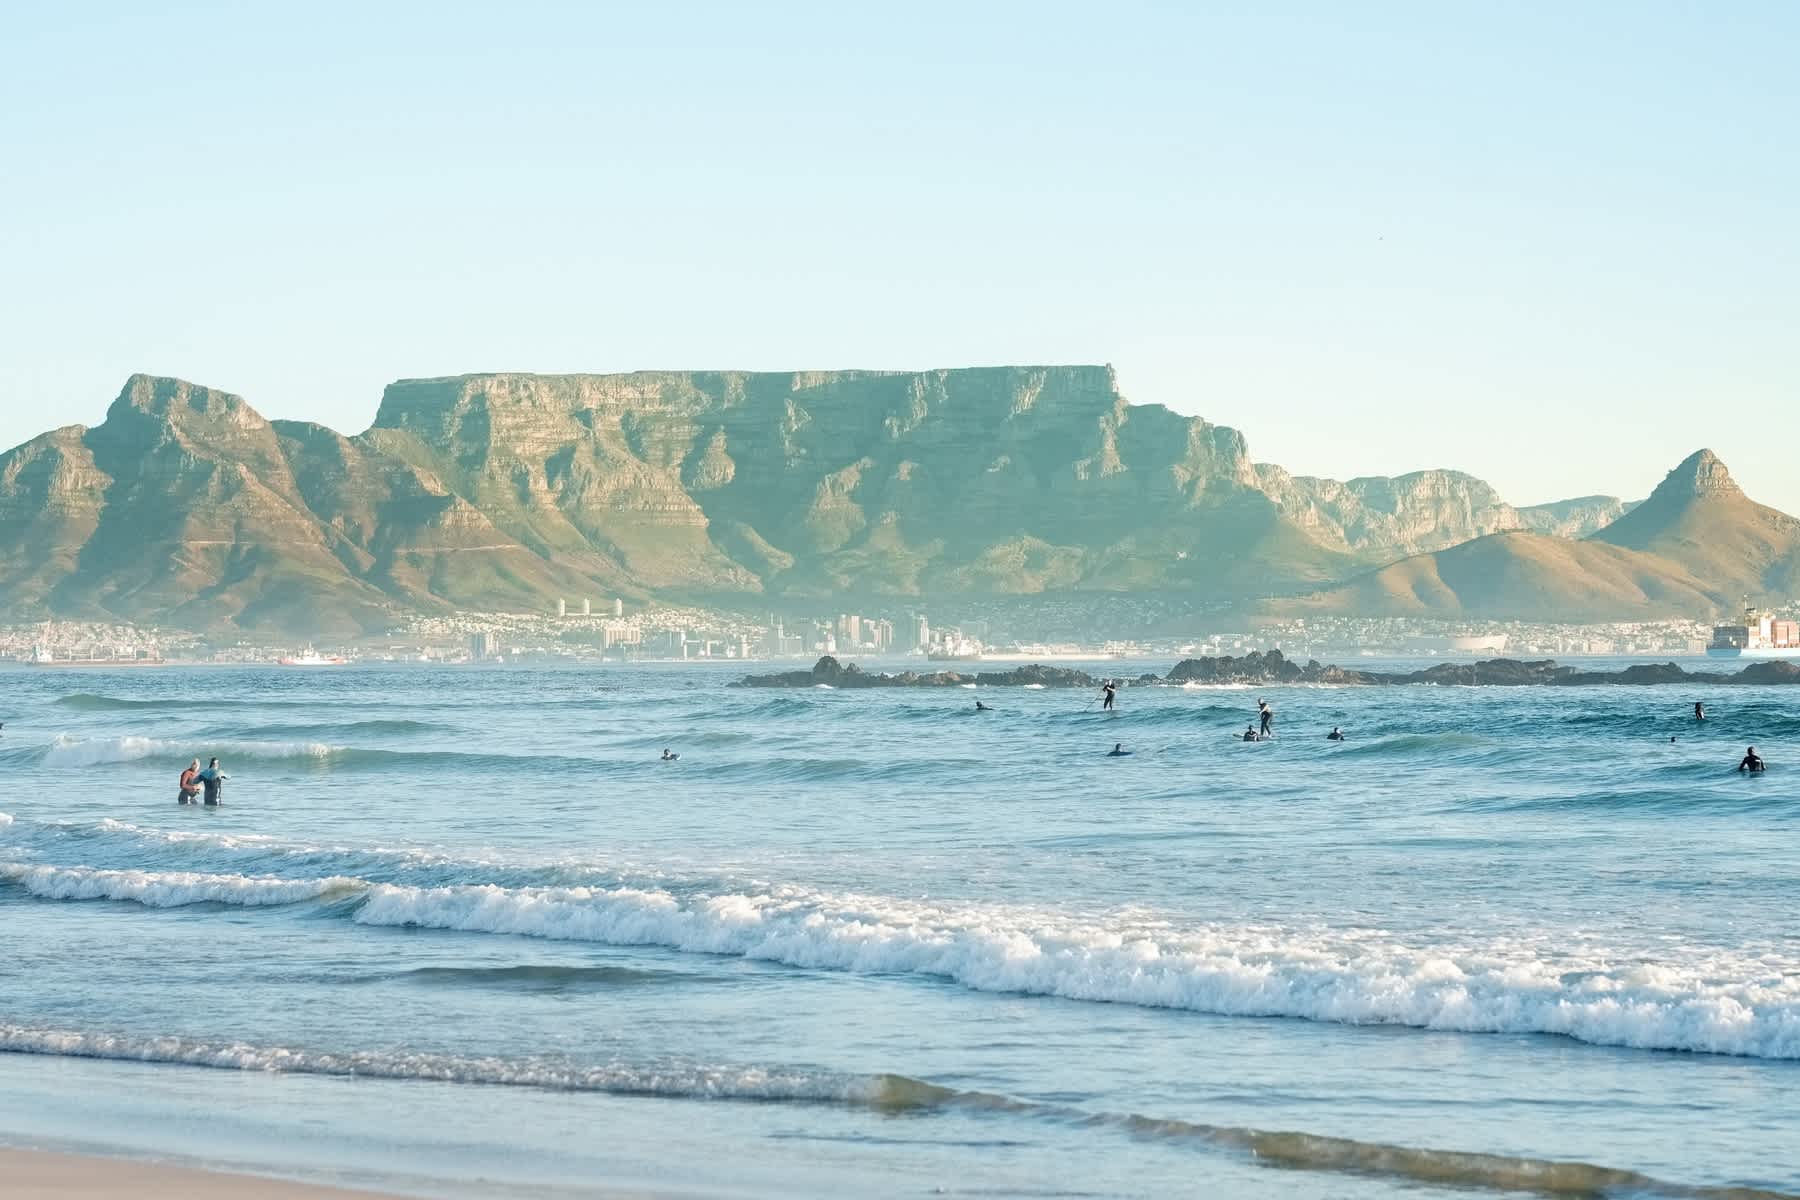 Afrique du Sud, surfeurs dans les vagues sur la côte.